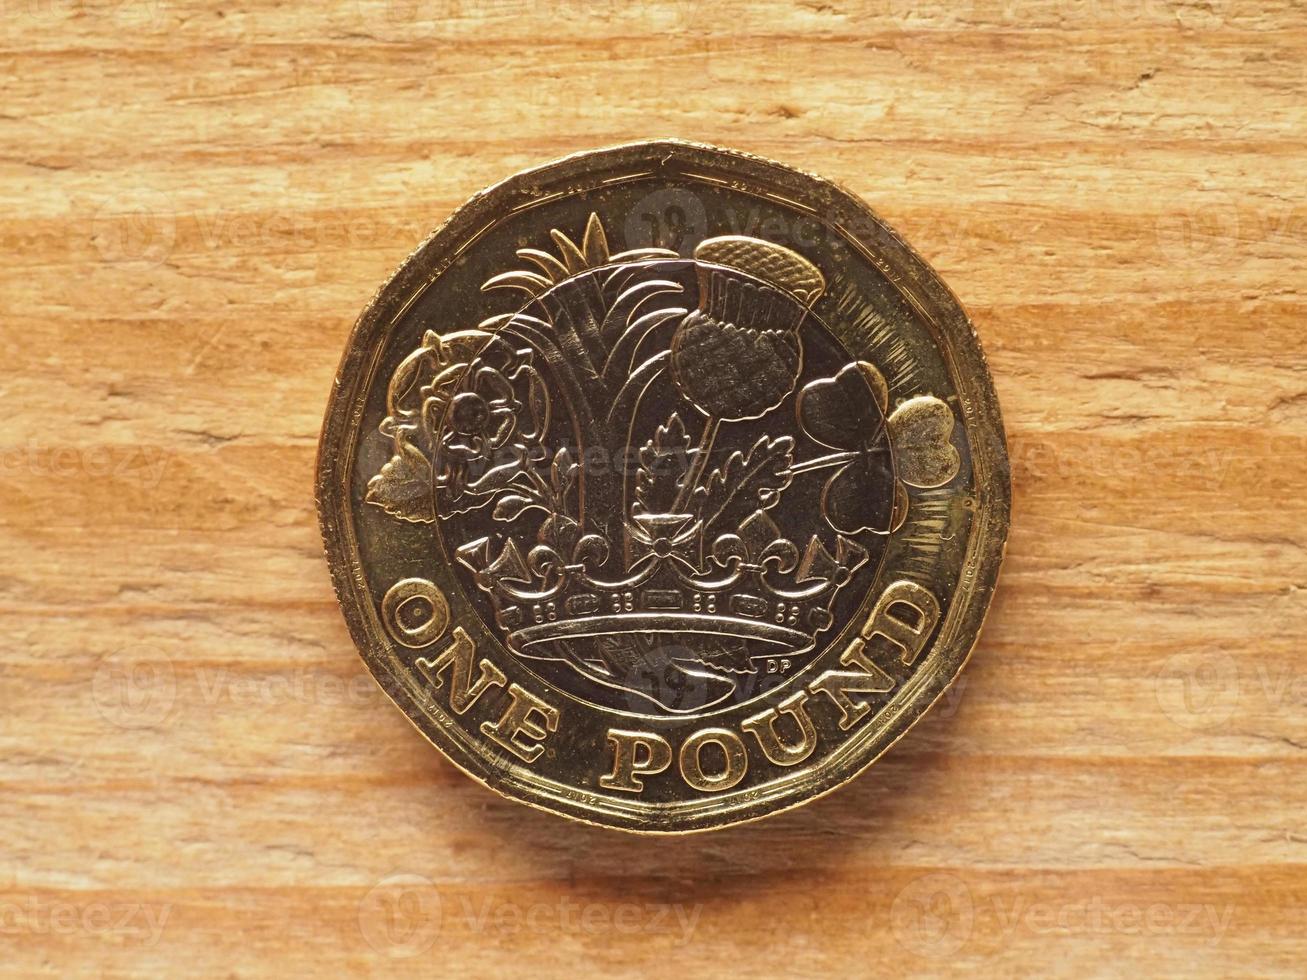 1 pond munt, achterkant met naties van de kroon, valuta foto